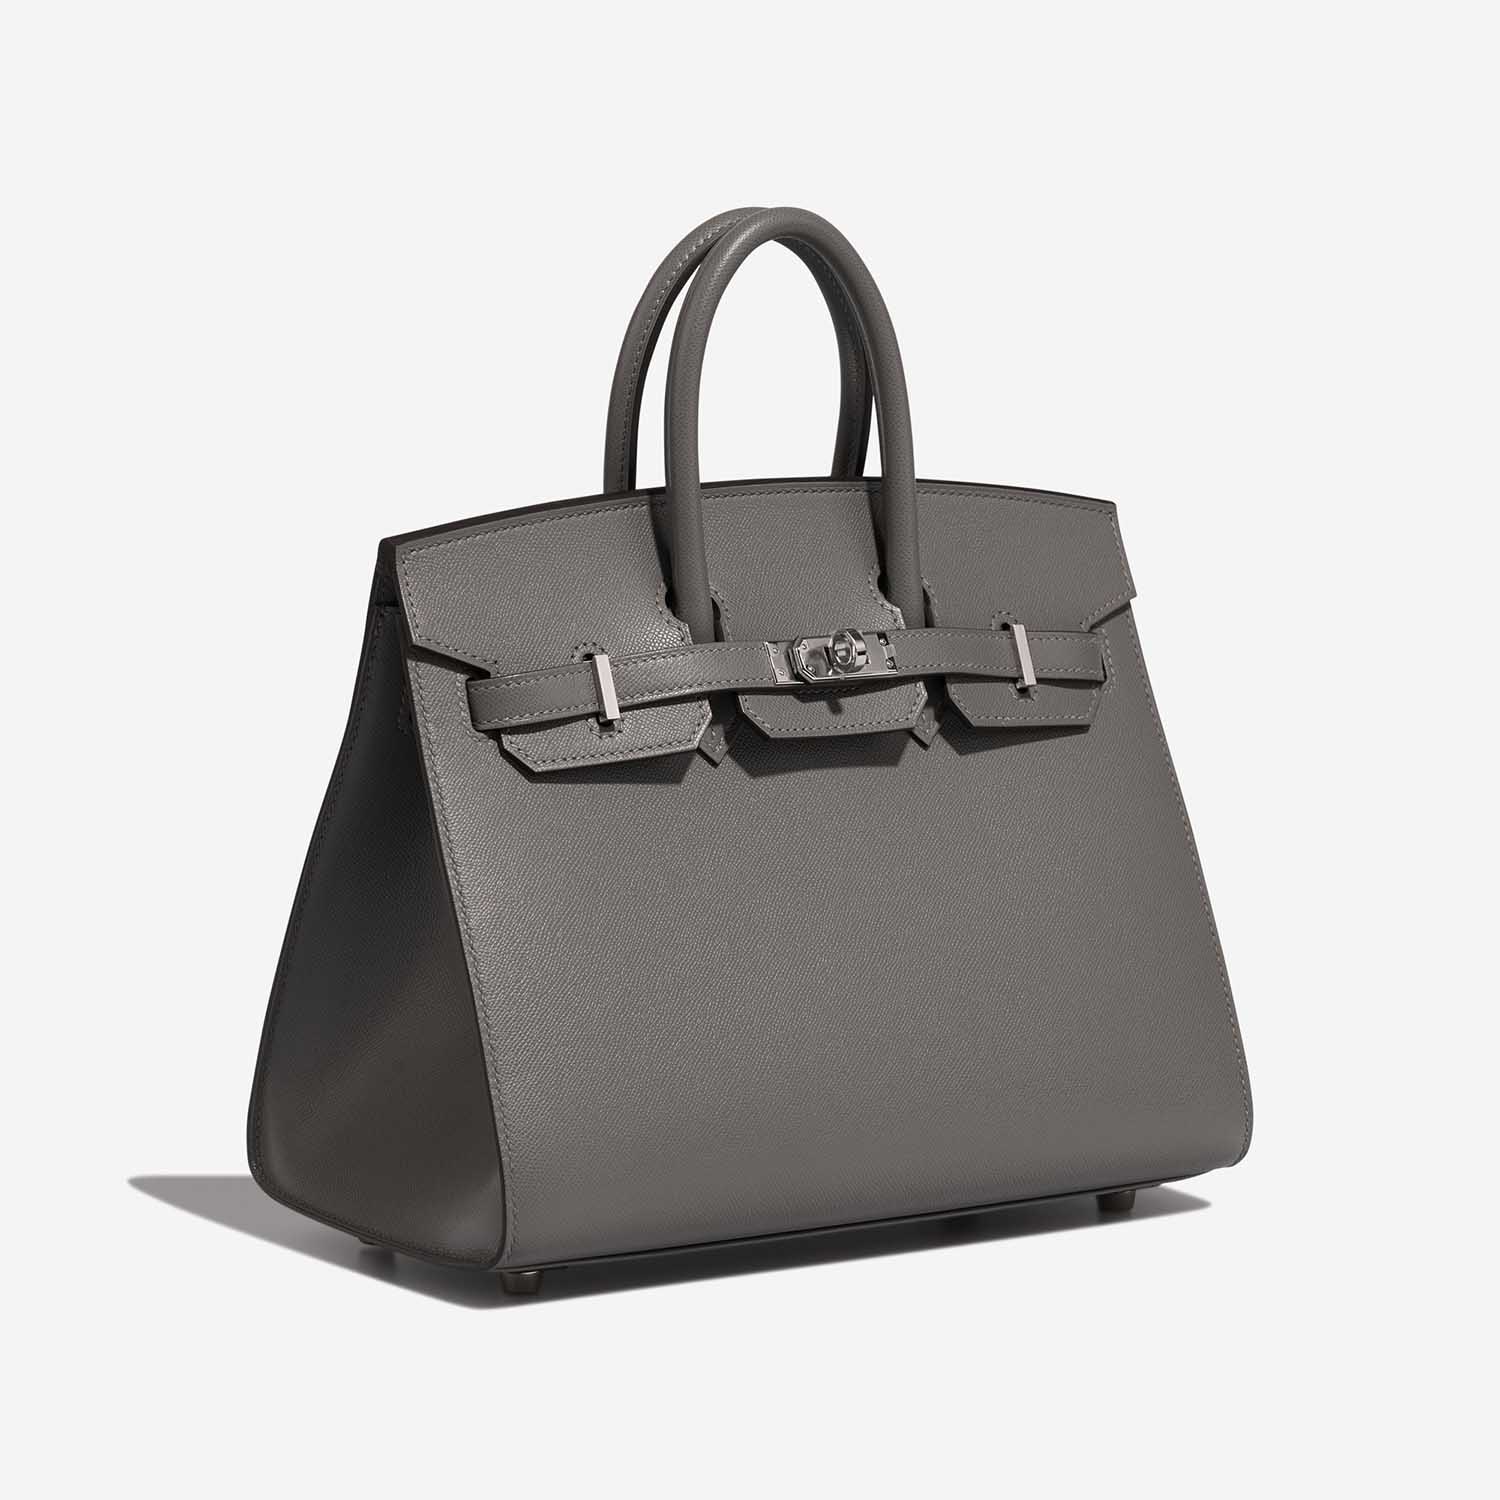 Hermès Birkin 25 GrisMeyer Side Front | Verkaufen Sie Ihre Designer-Tasche auf Saclab.com